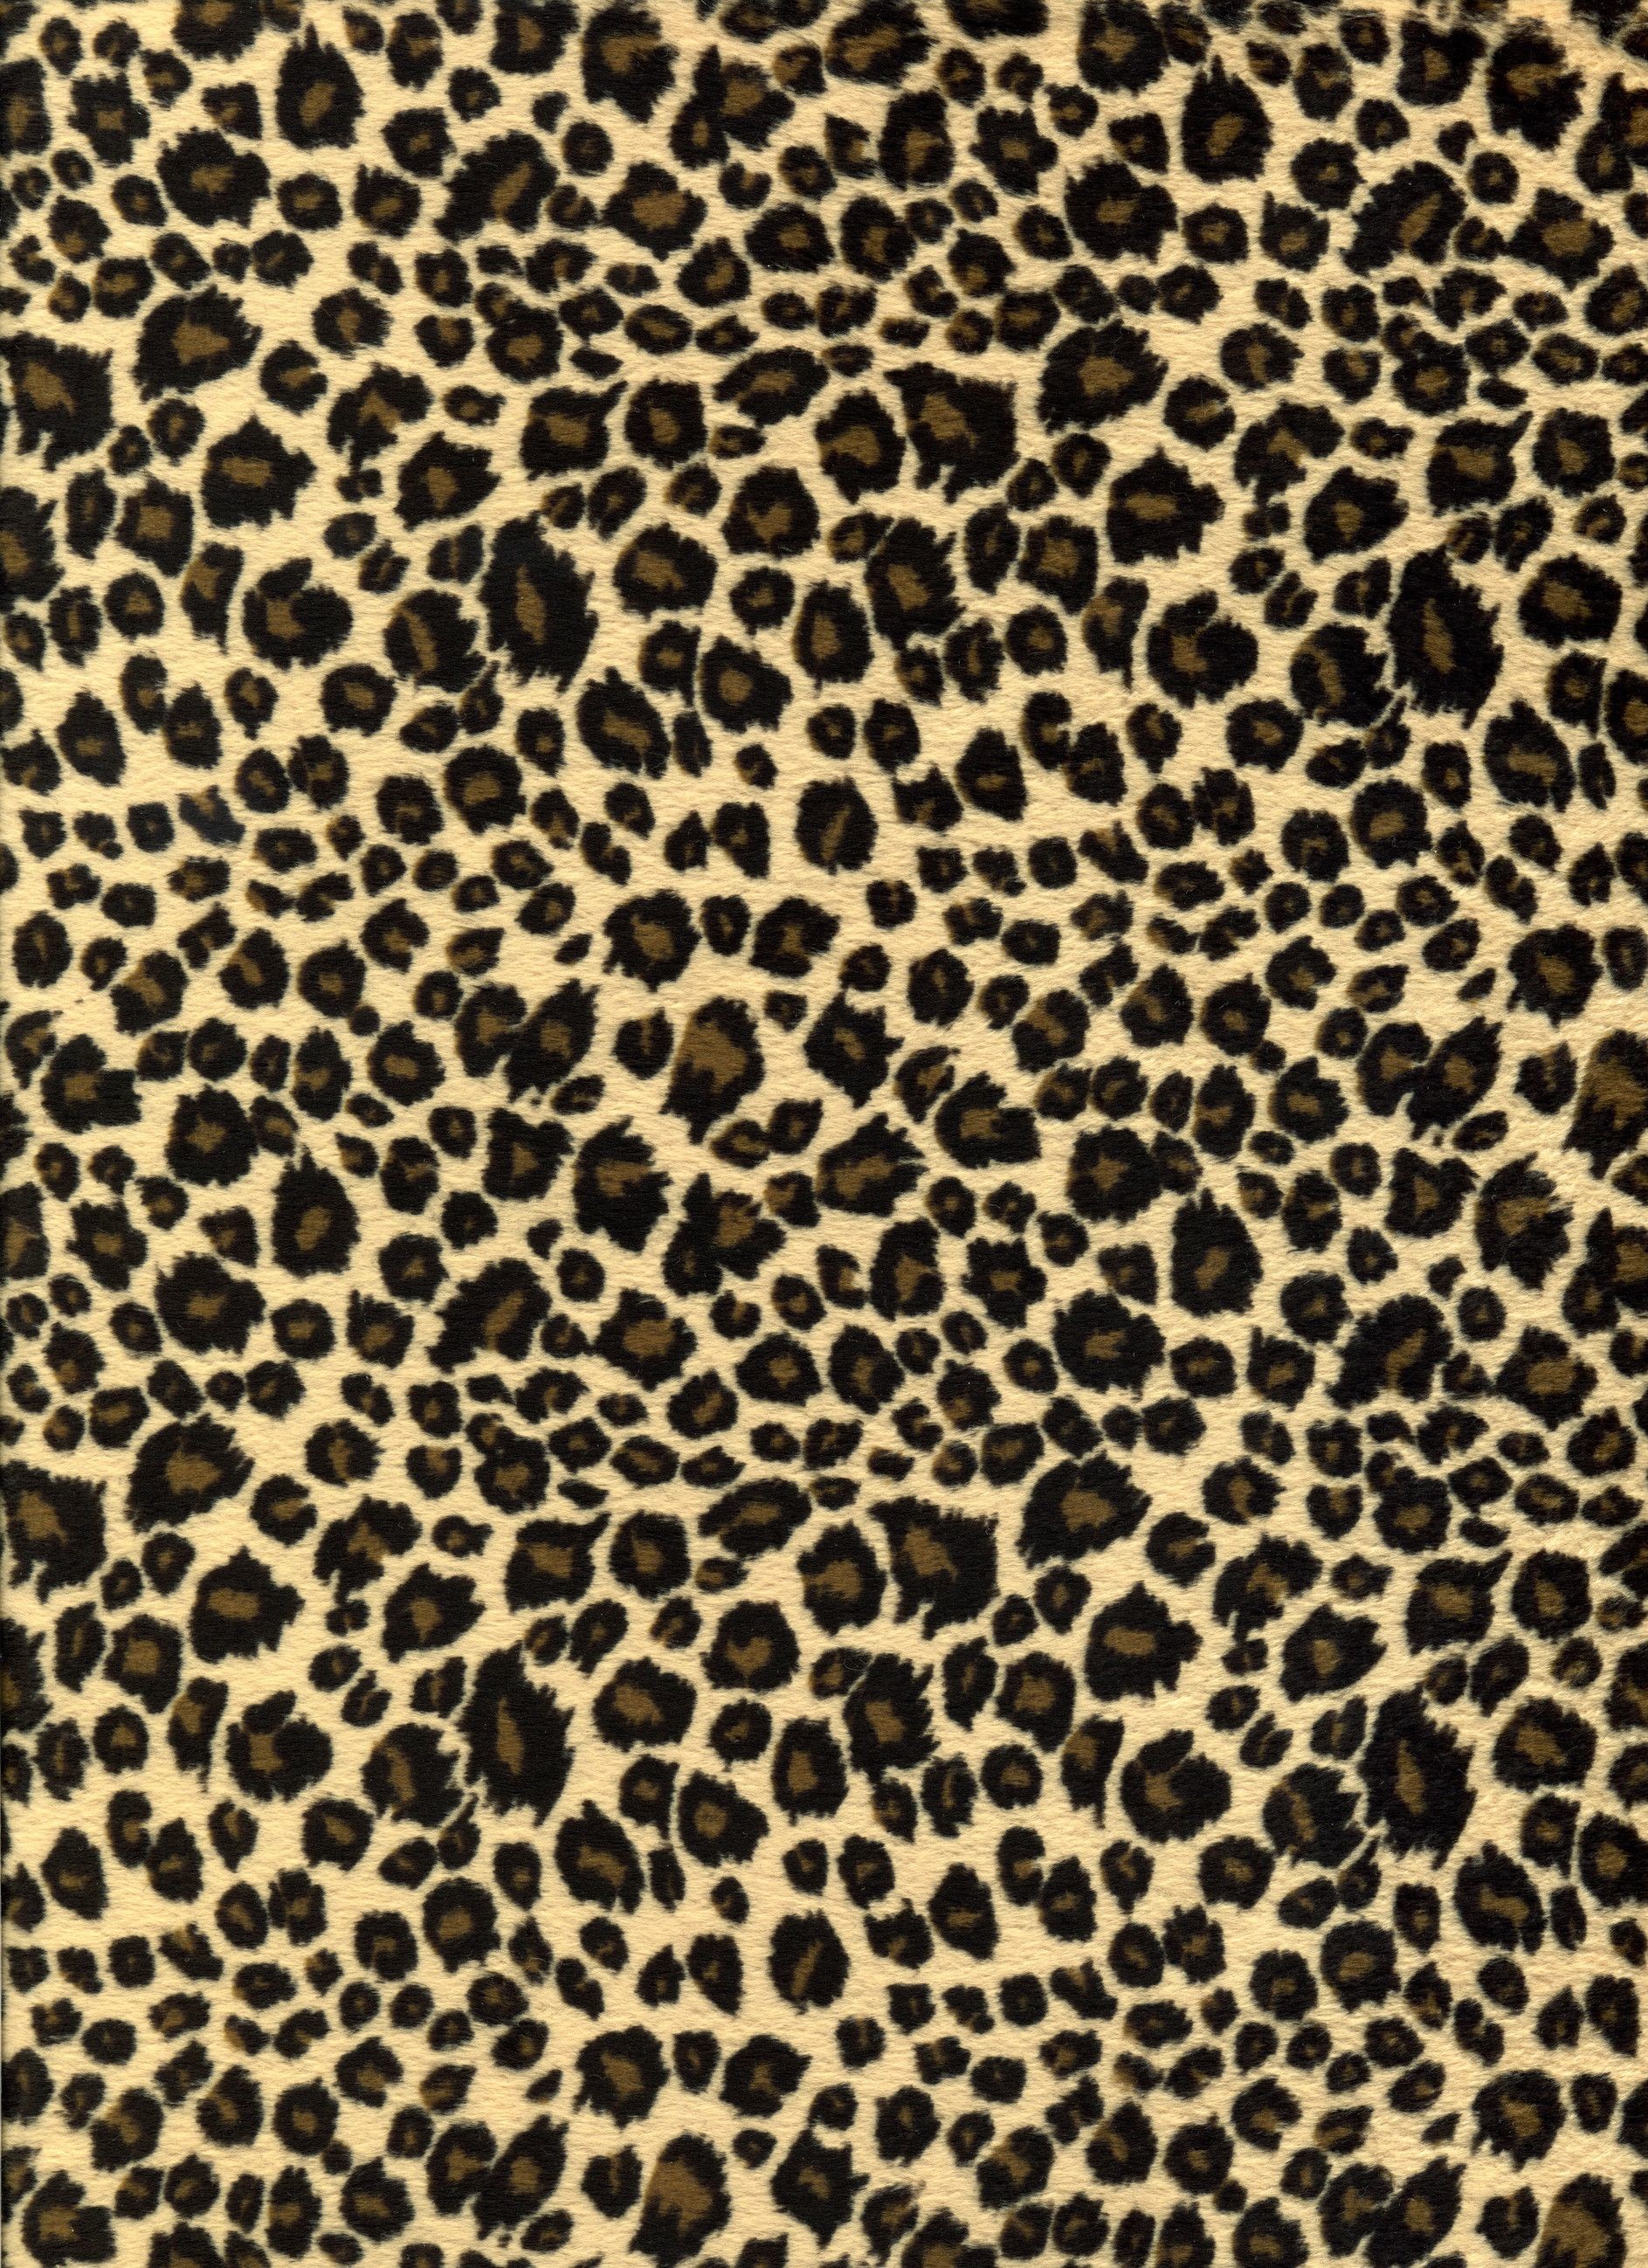 1887x2597 loving the leopard print patterns!